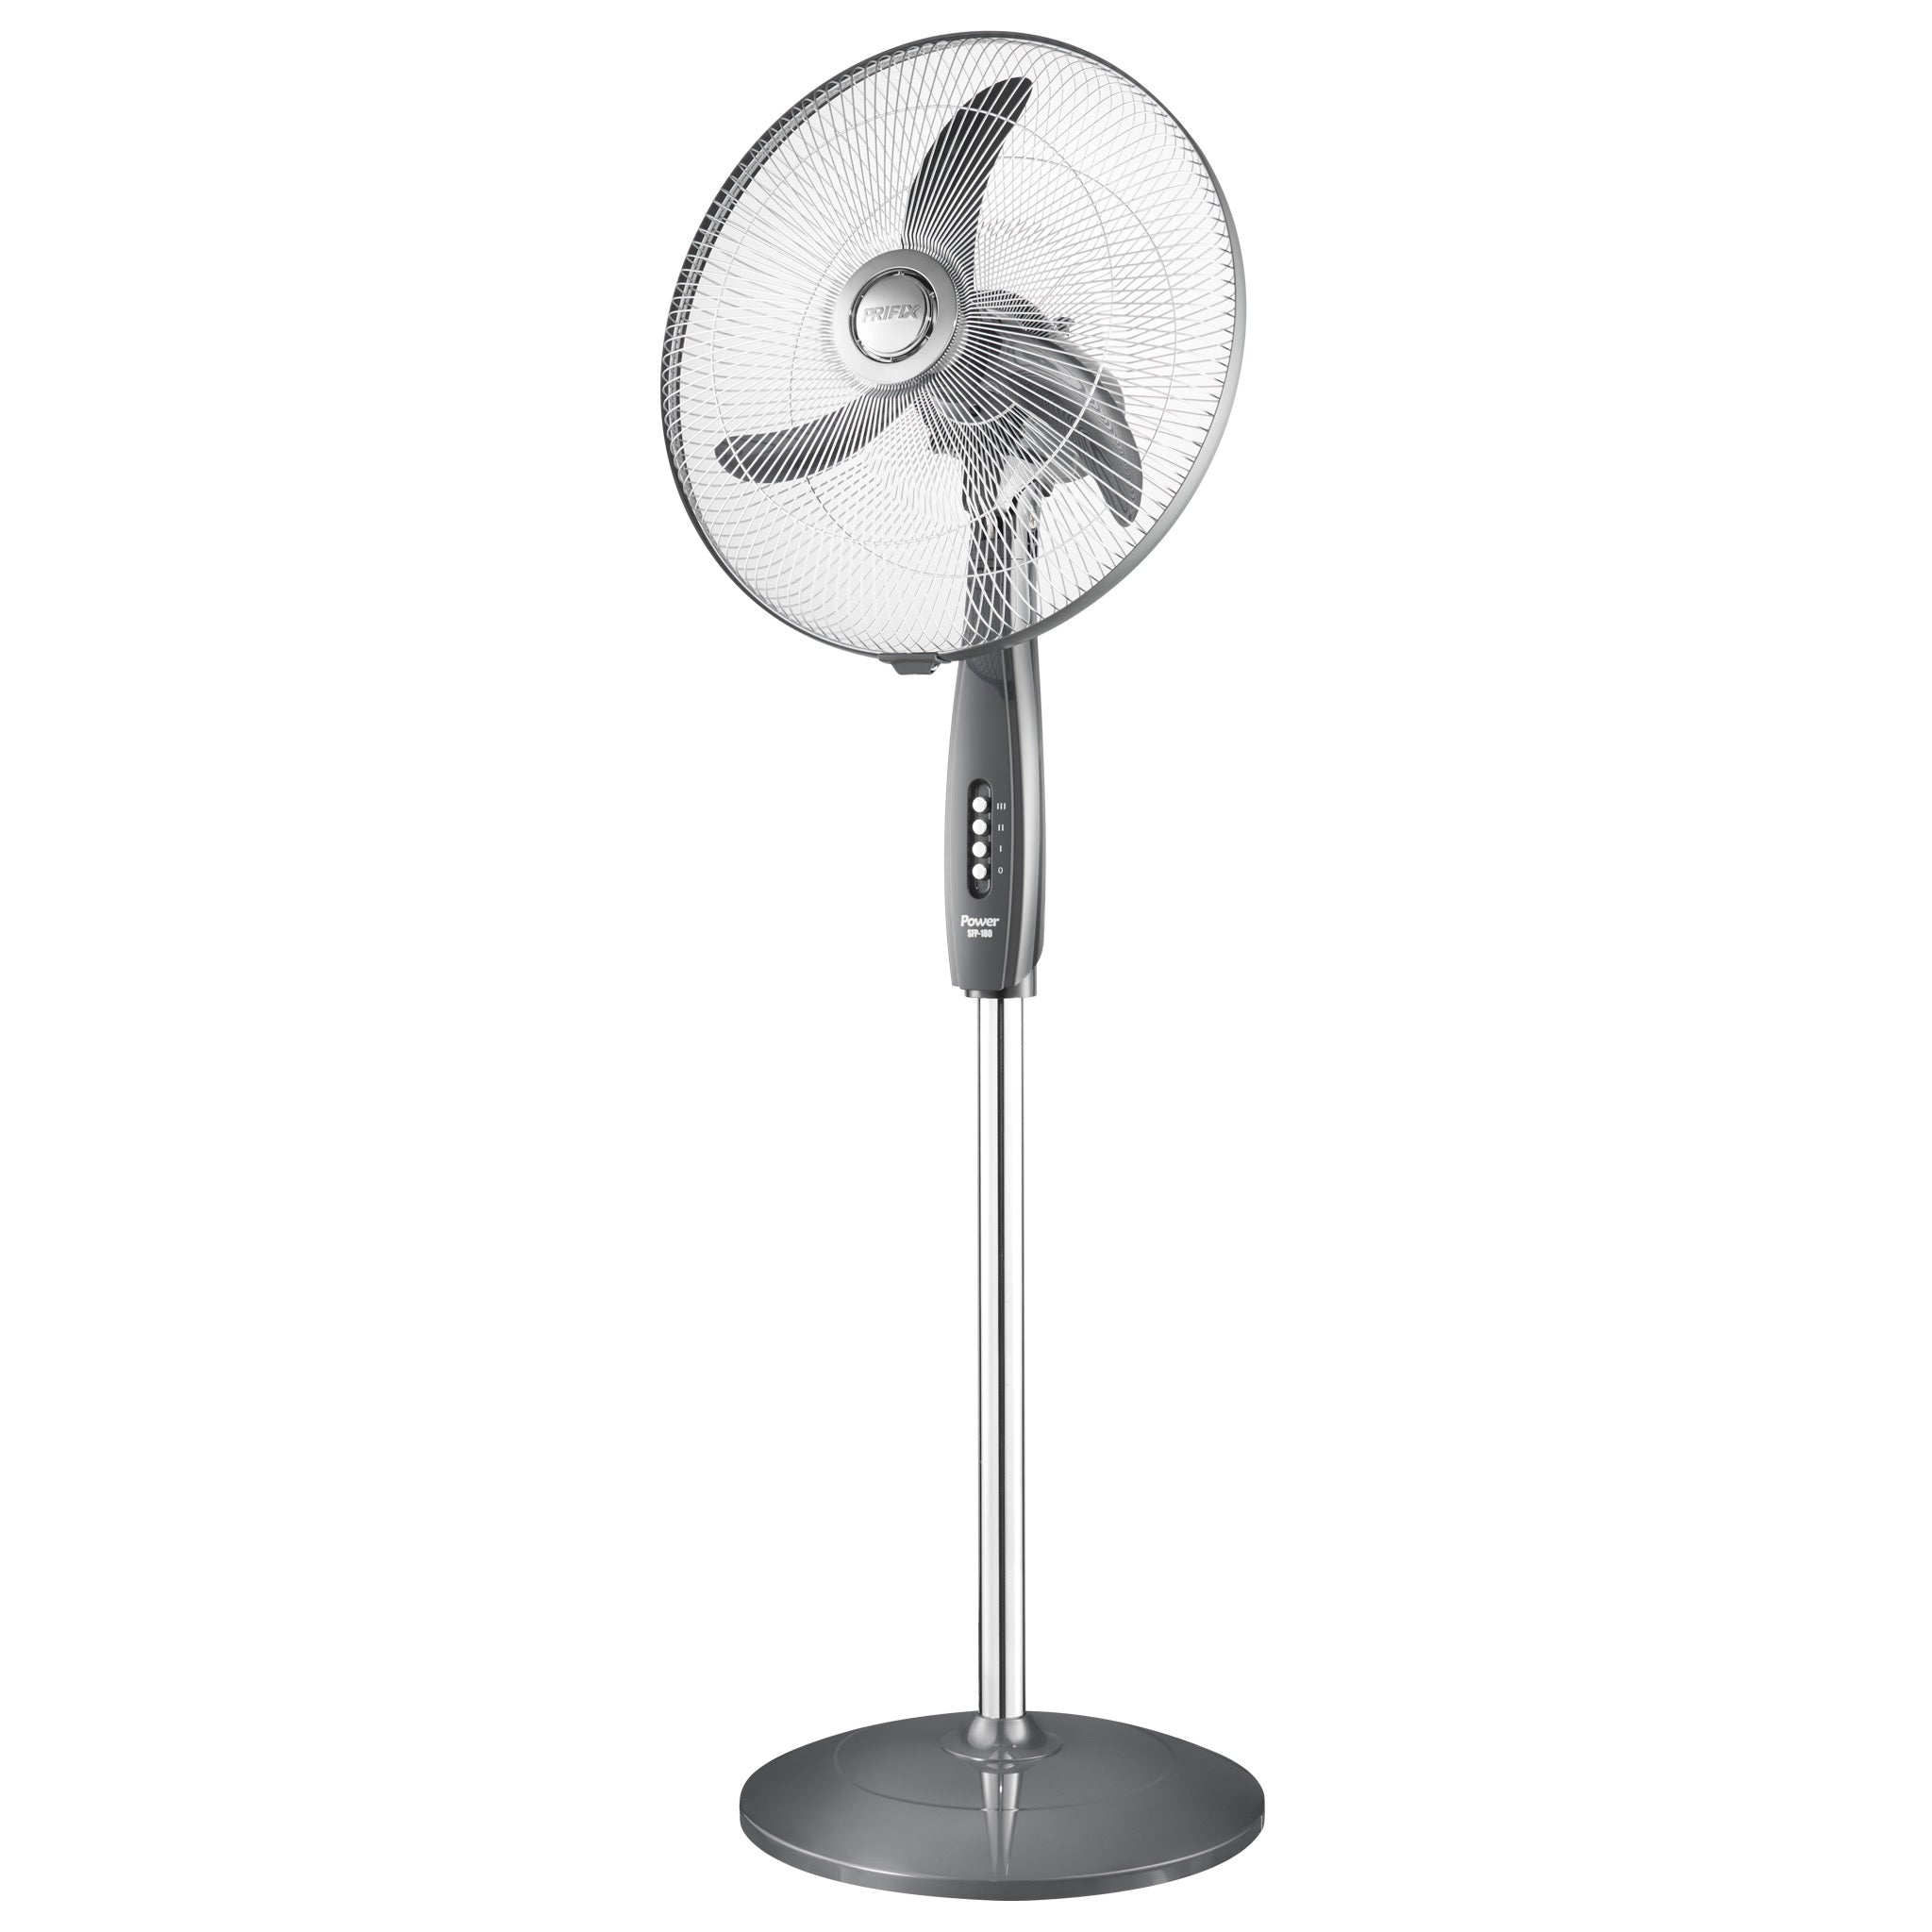 Prifix Power stand fan